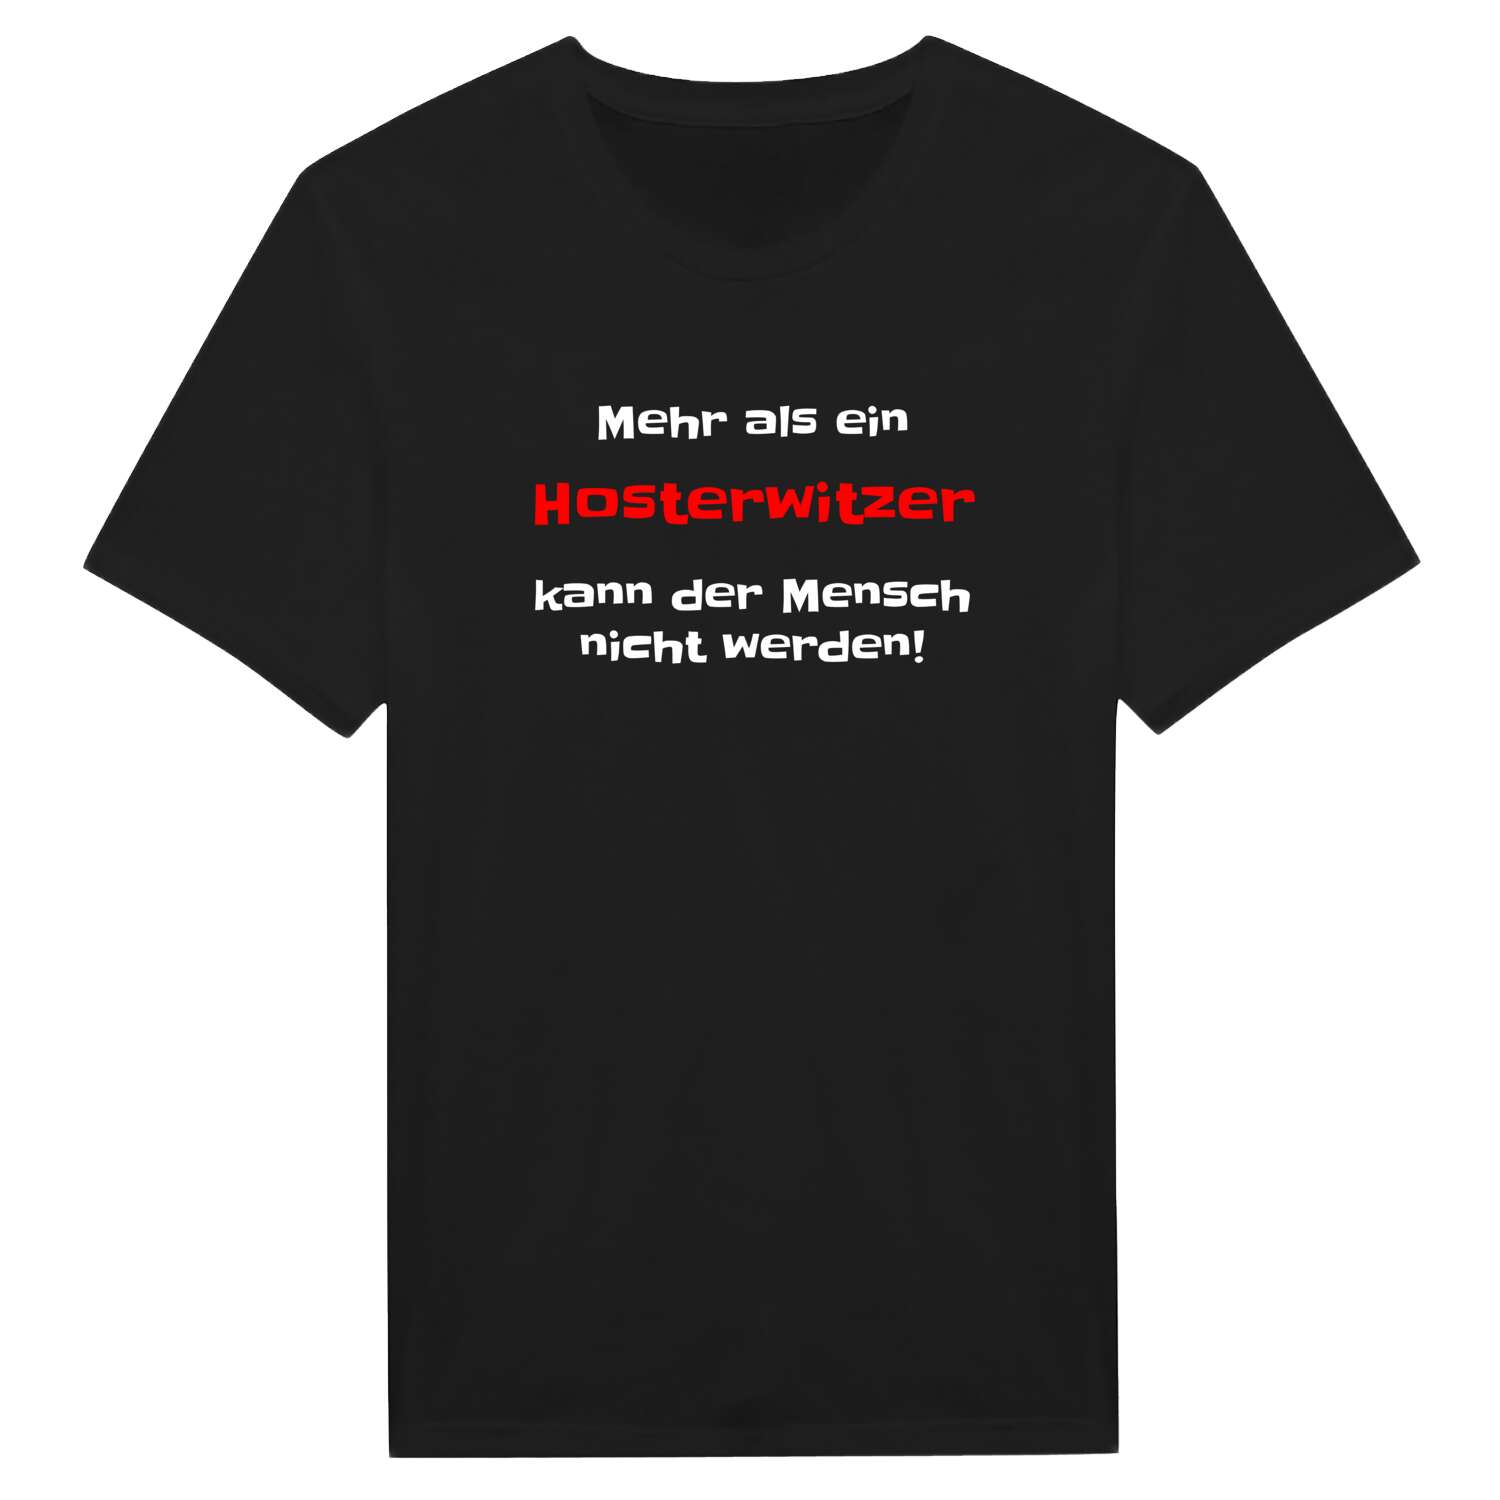 Hosterwitz T-Shirt »Mehr als ein«